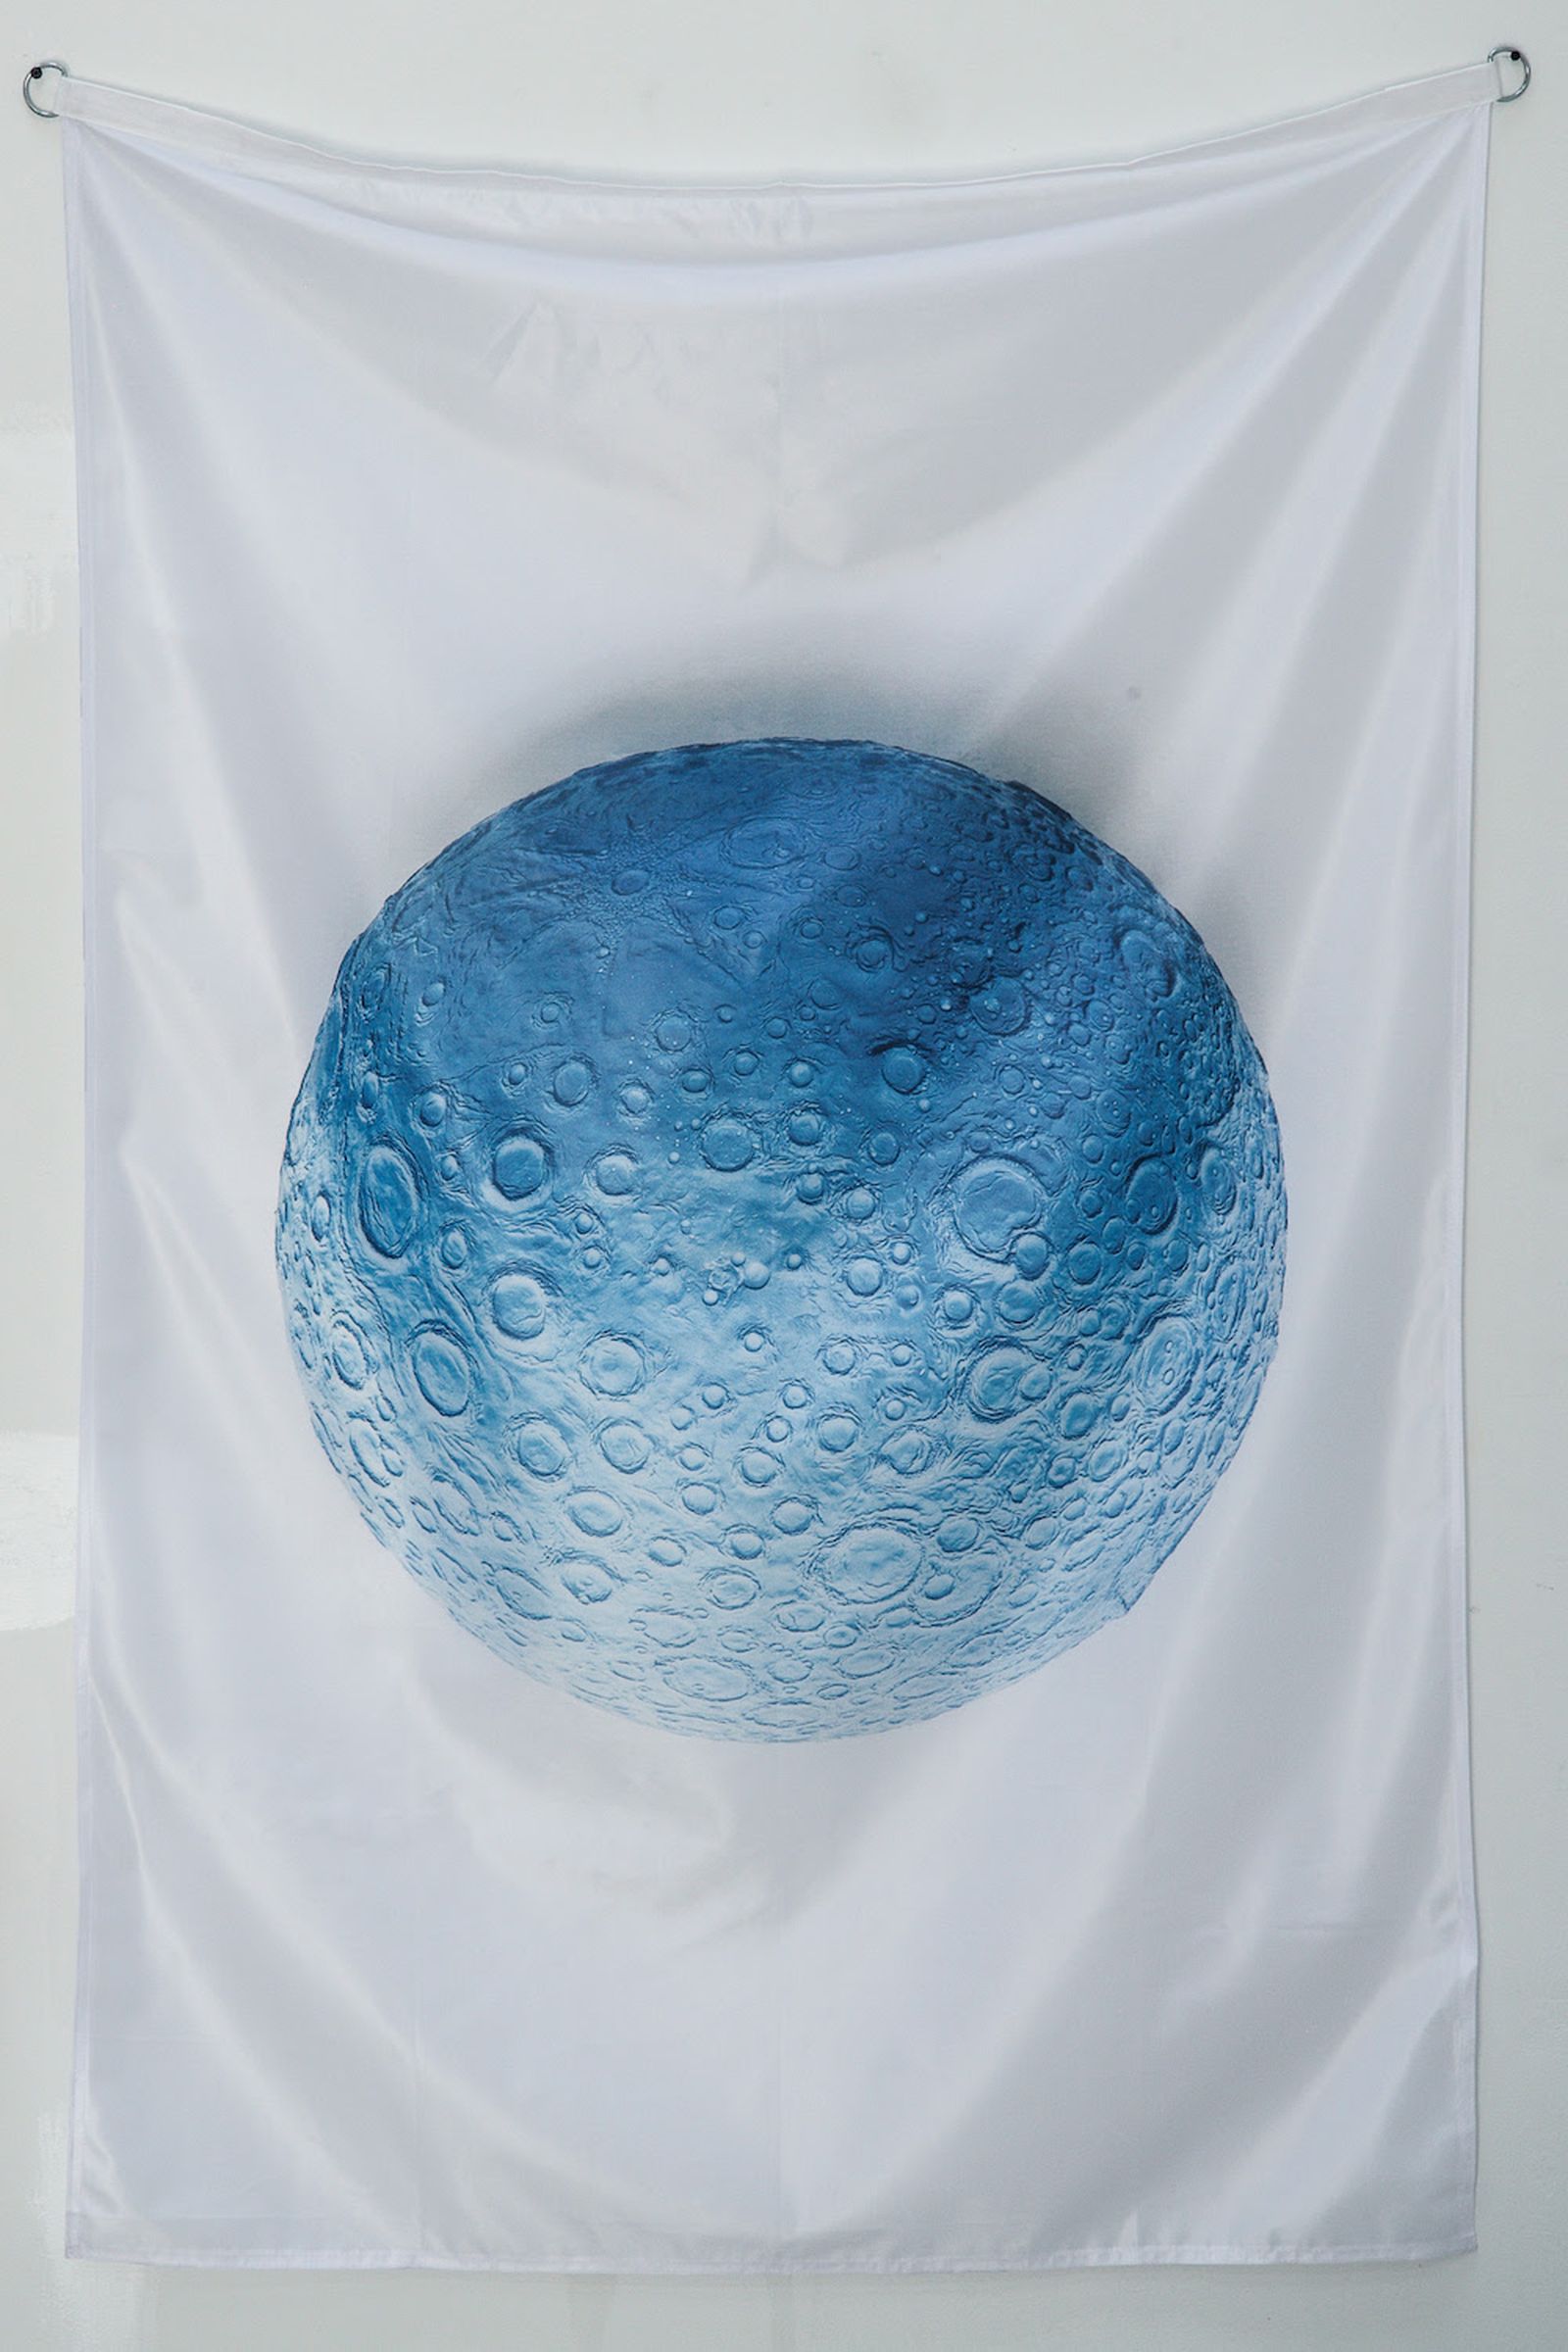 daniel-arsham-moon-flag-03